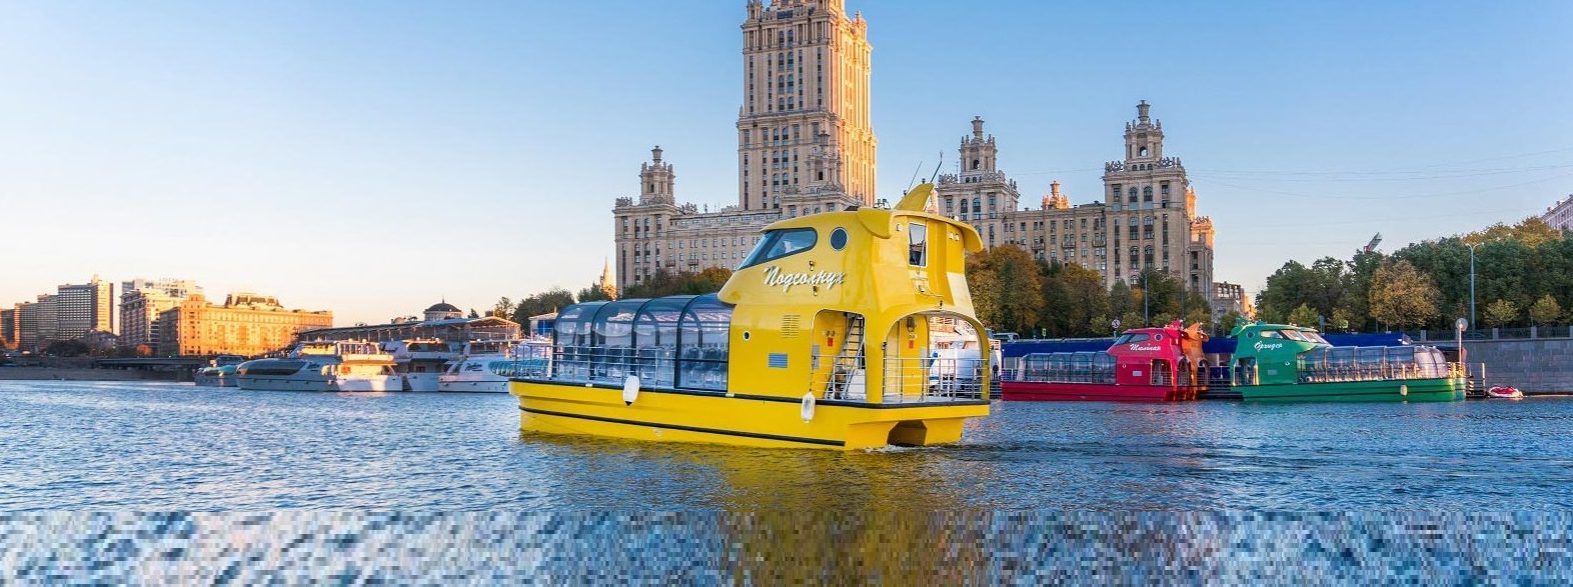 Речные трамваи с цветочными названиями начали курсировать по Москве-реке. Фото: официальный сайт мэра Москвы